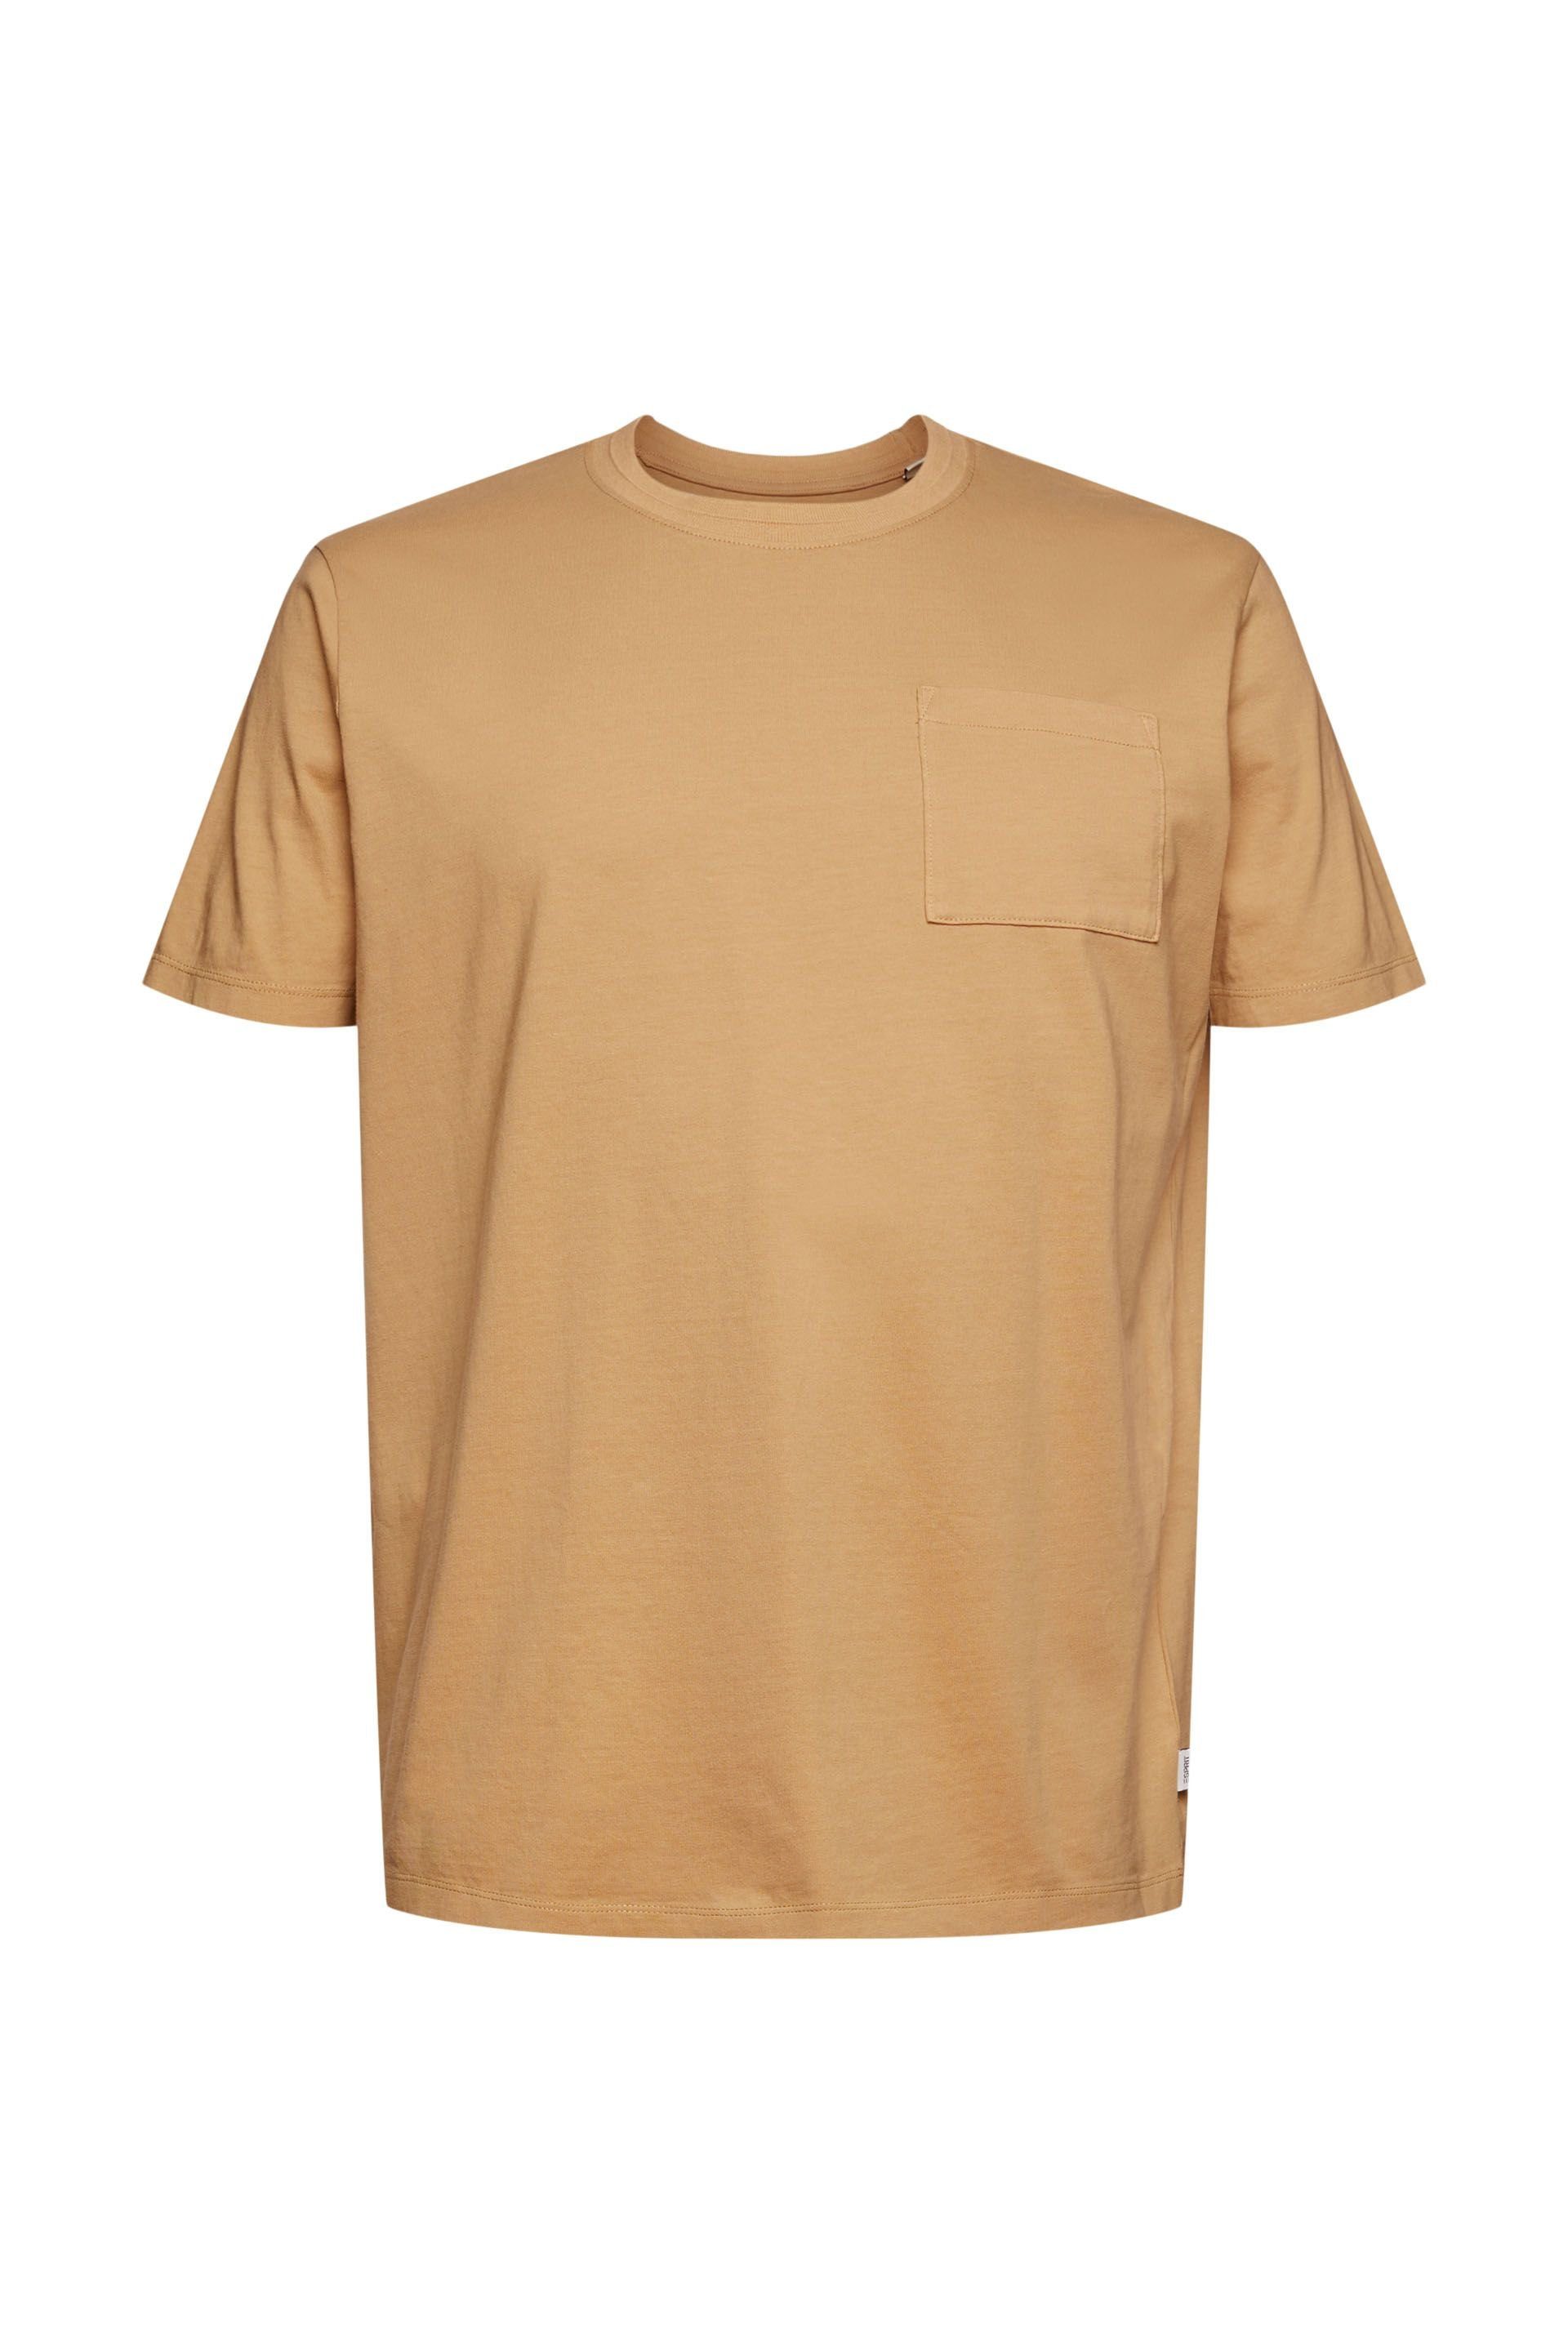 Esprit T-Shirt beige